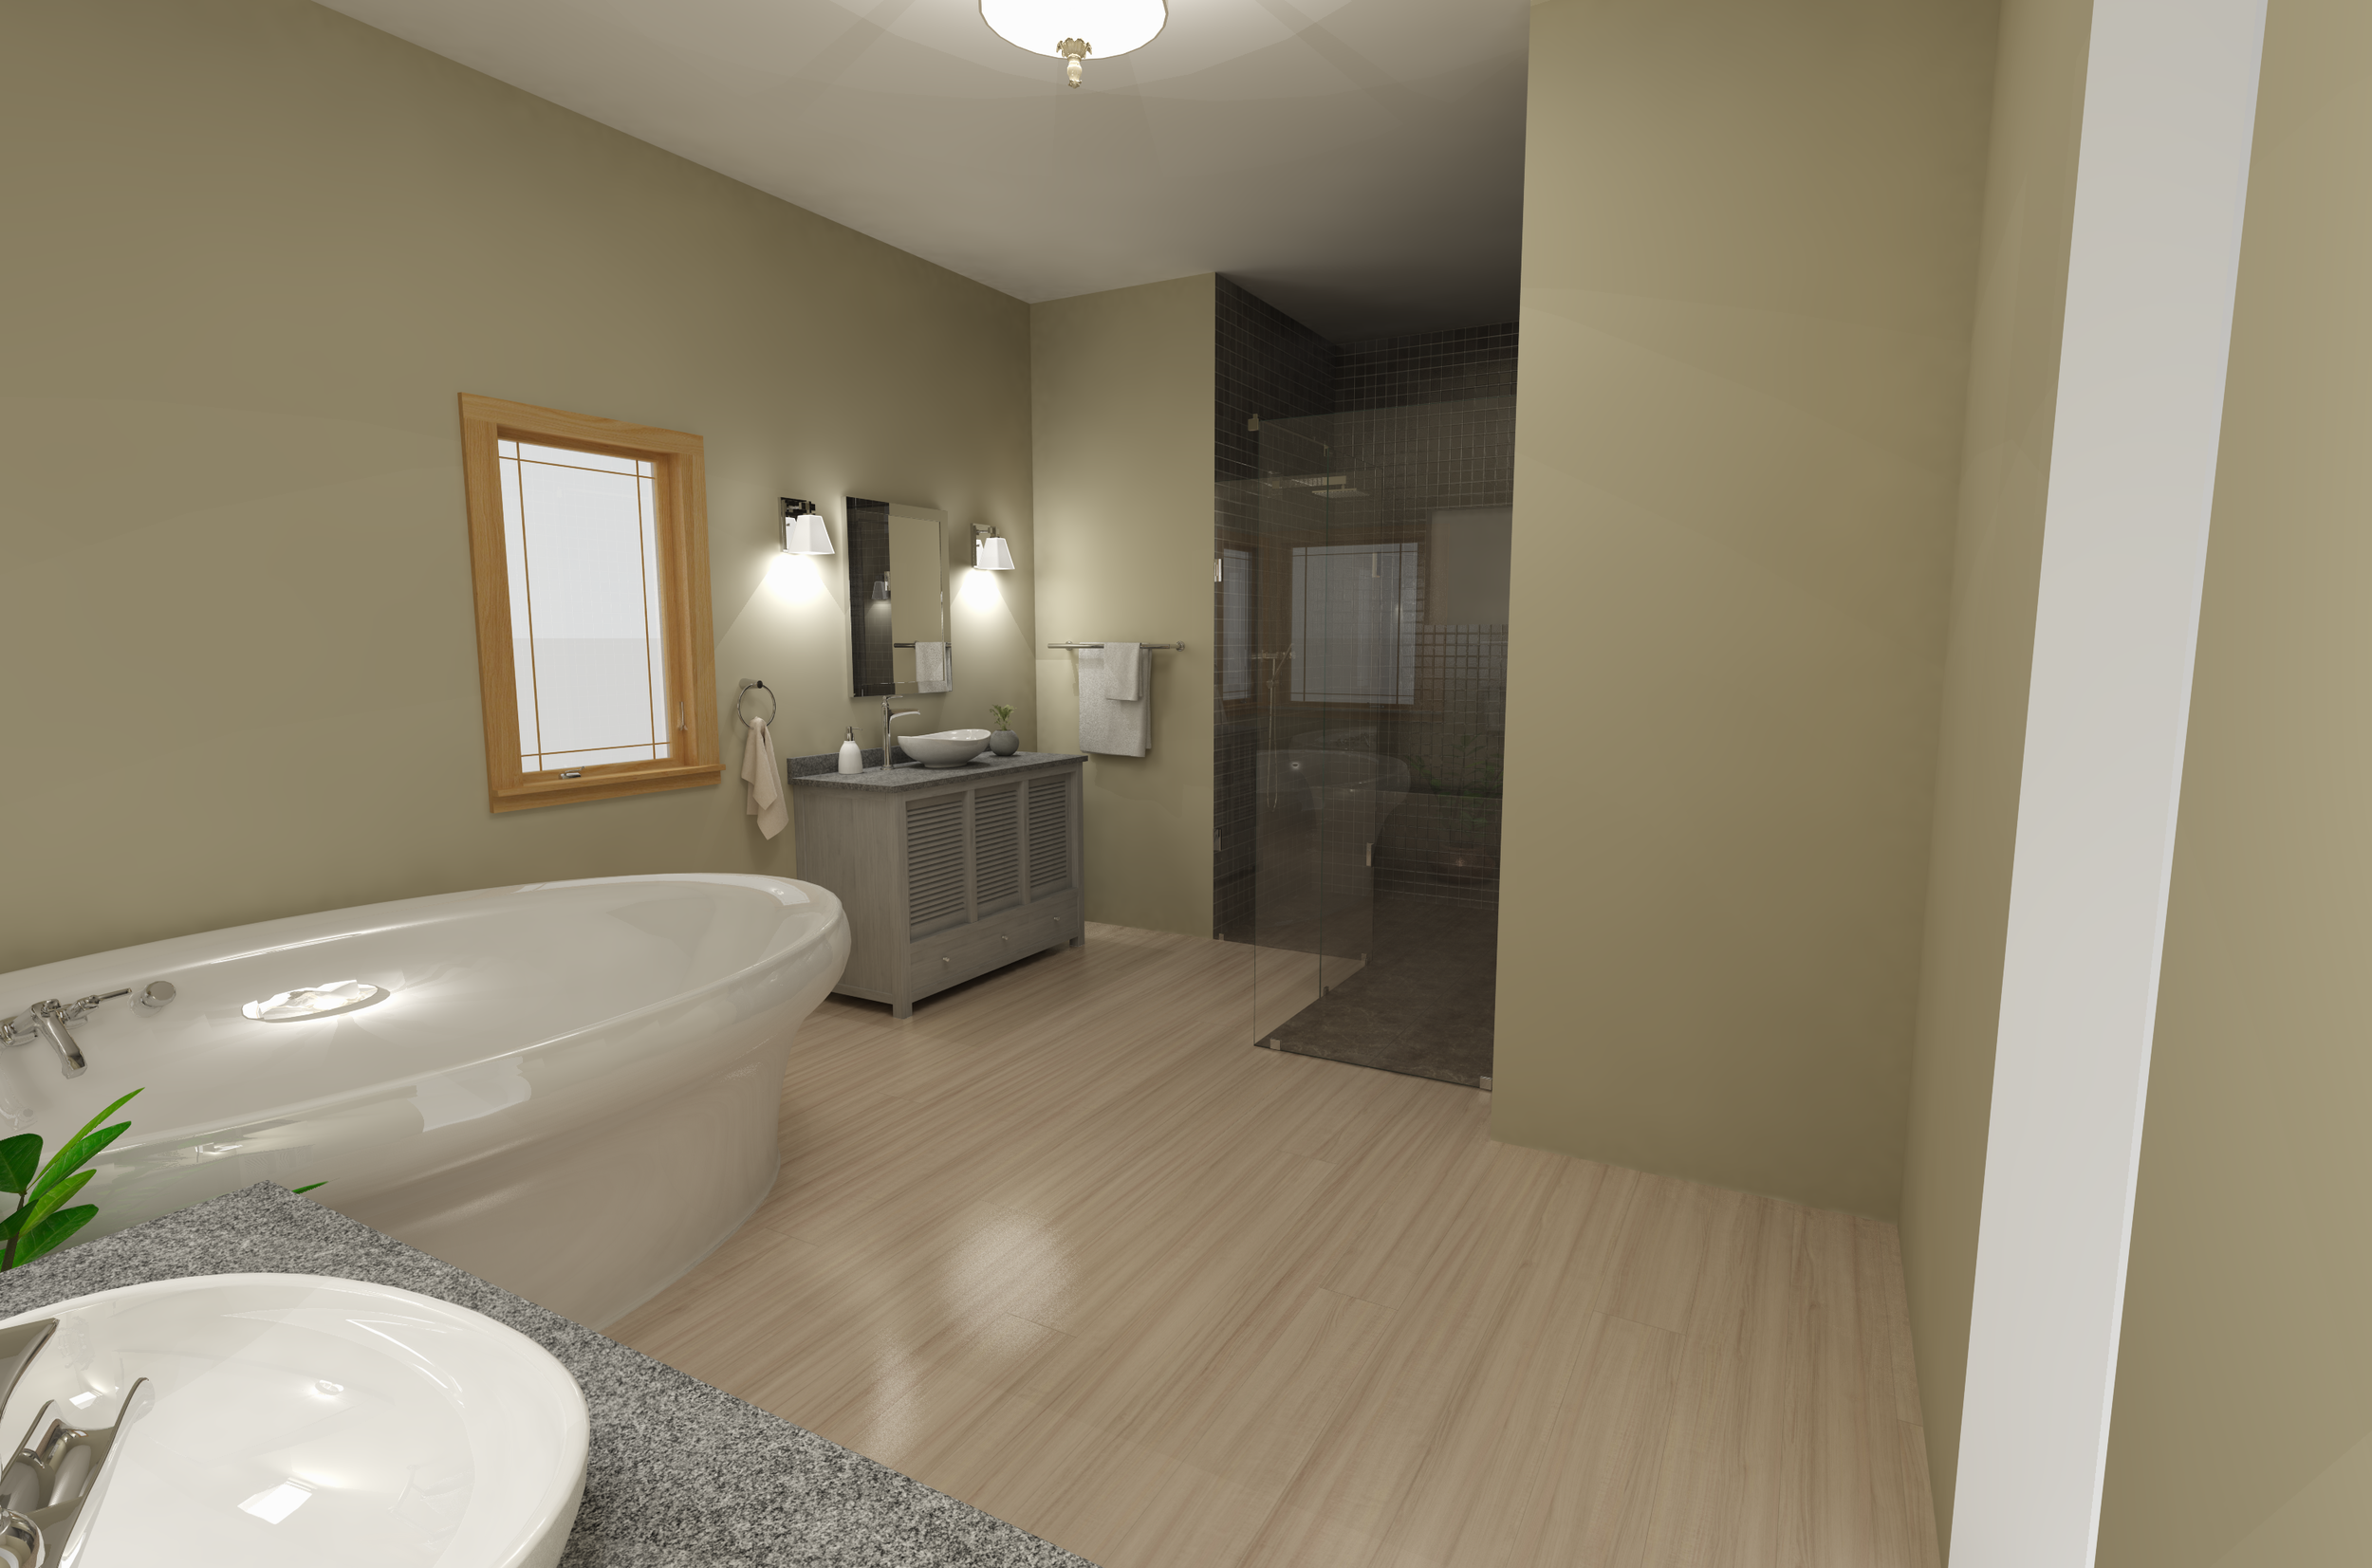 Sample bathroom design 2020-03-22 16341800000.png